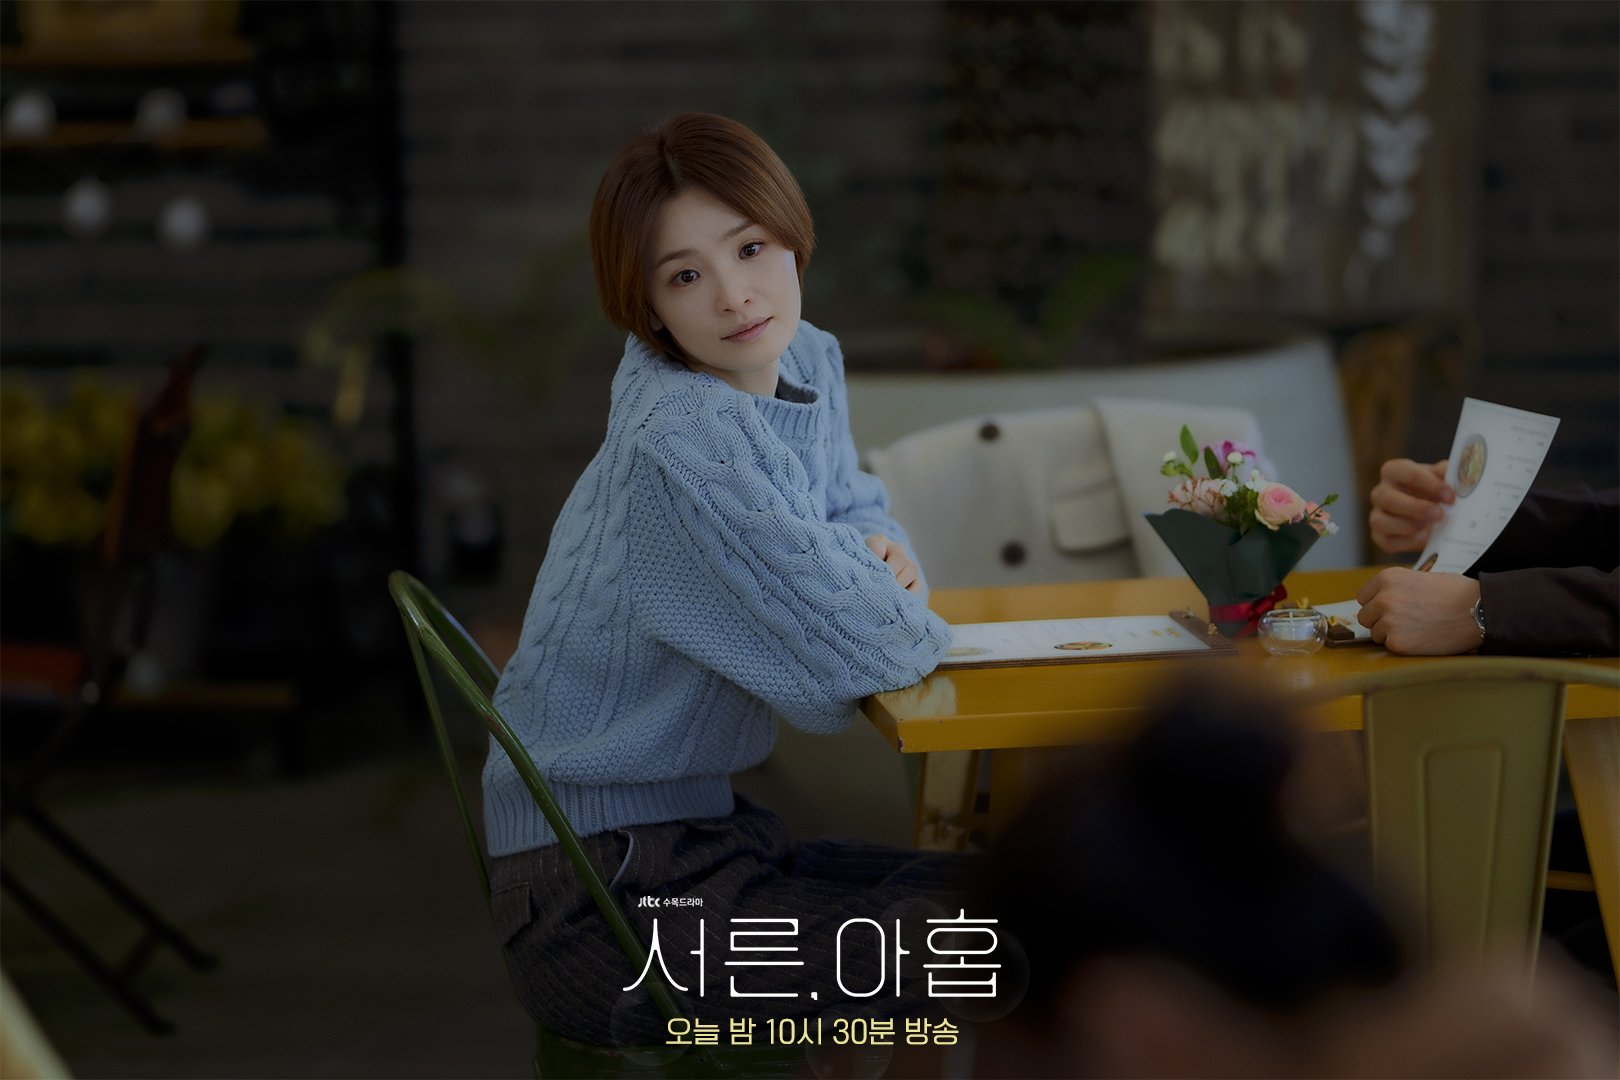 Sau đám cưới với Hyun Bin, phim của Son Ye Jin khép lại với rating chạm nóc, netizen nức nở tạm biệt chị đẹp phiên bản độc thân - Ảnh 1.